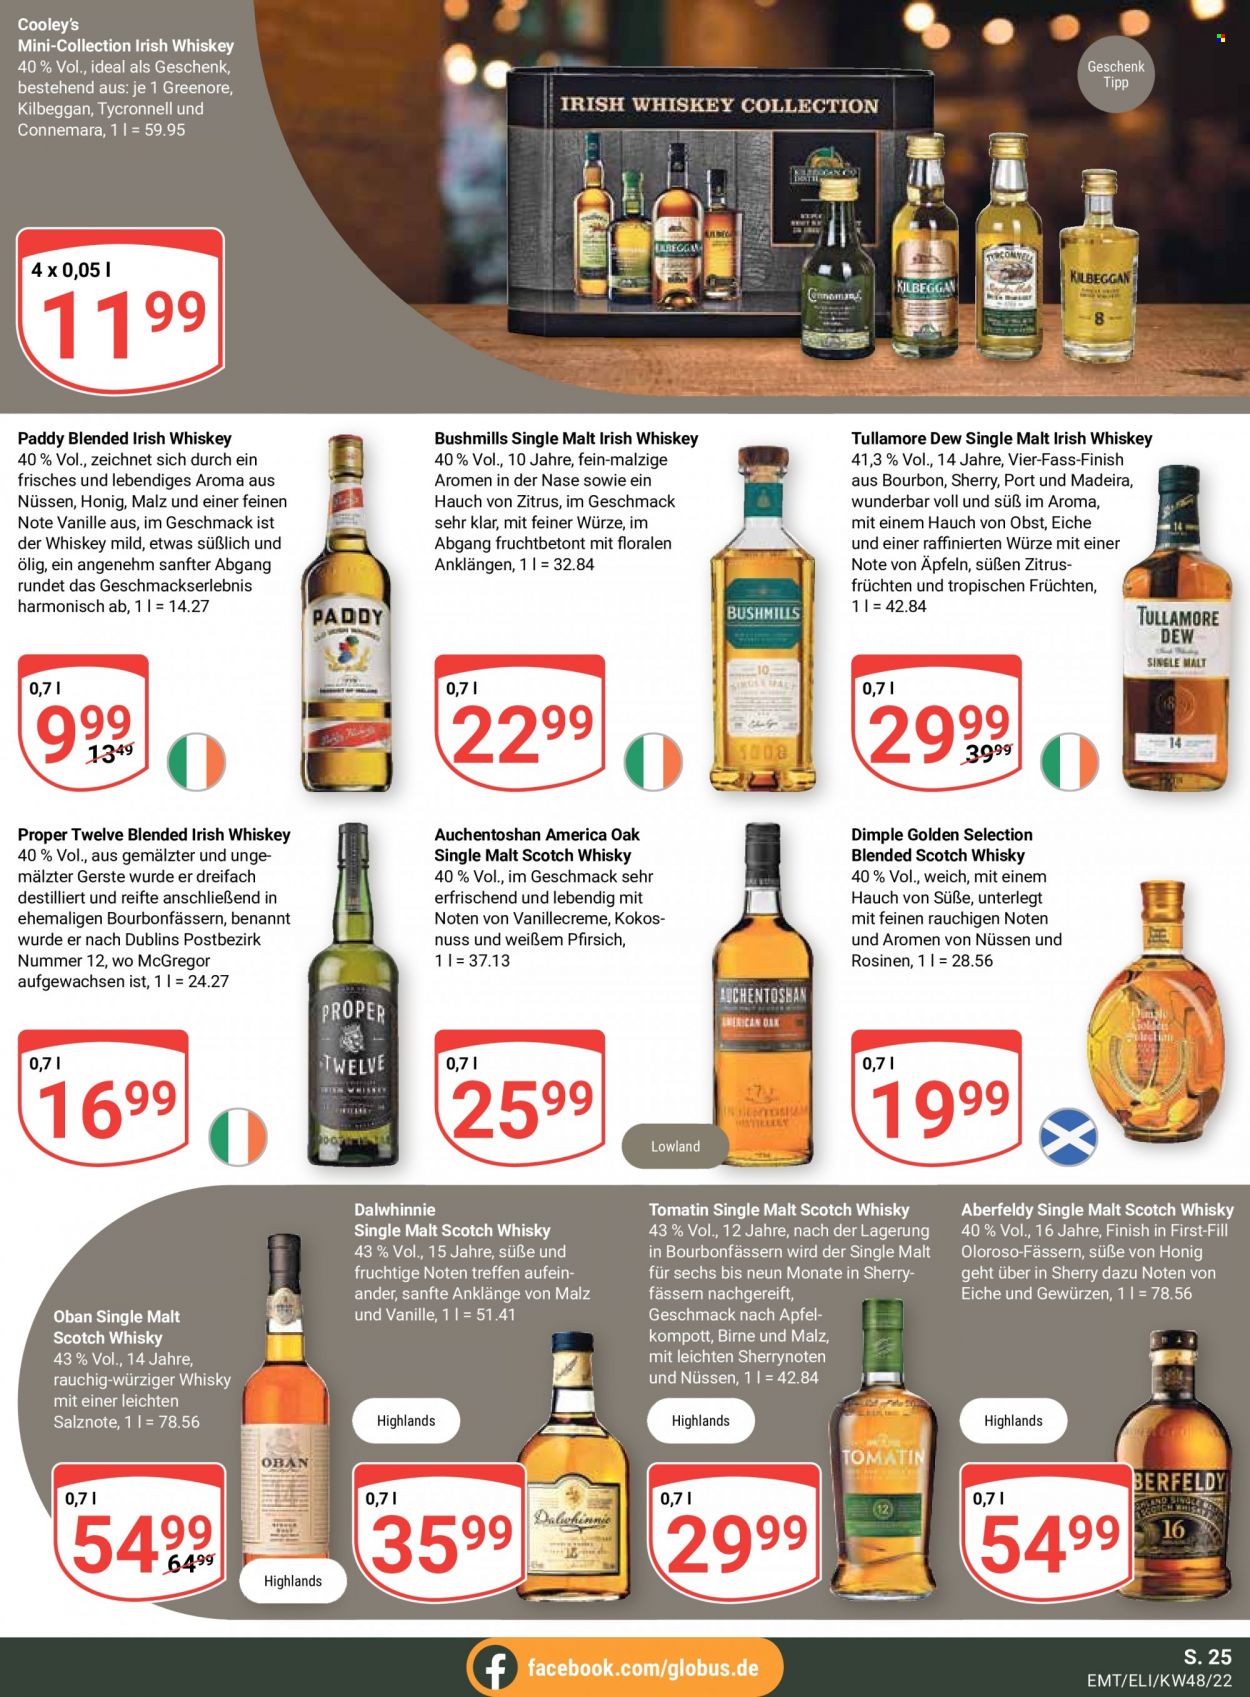 thumbnail - Prospekte Globus - 28.11.2022 - 3.12.2022 - Produkte in Aktion - Alkohol, Portwein, Blended Scotch Whisky, Whiskey, Single Malt, Scotch Whisky, Irish Whiskey, Tullamore Dew, Tomatin, Finish. Seite 25.